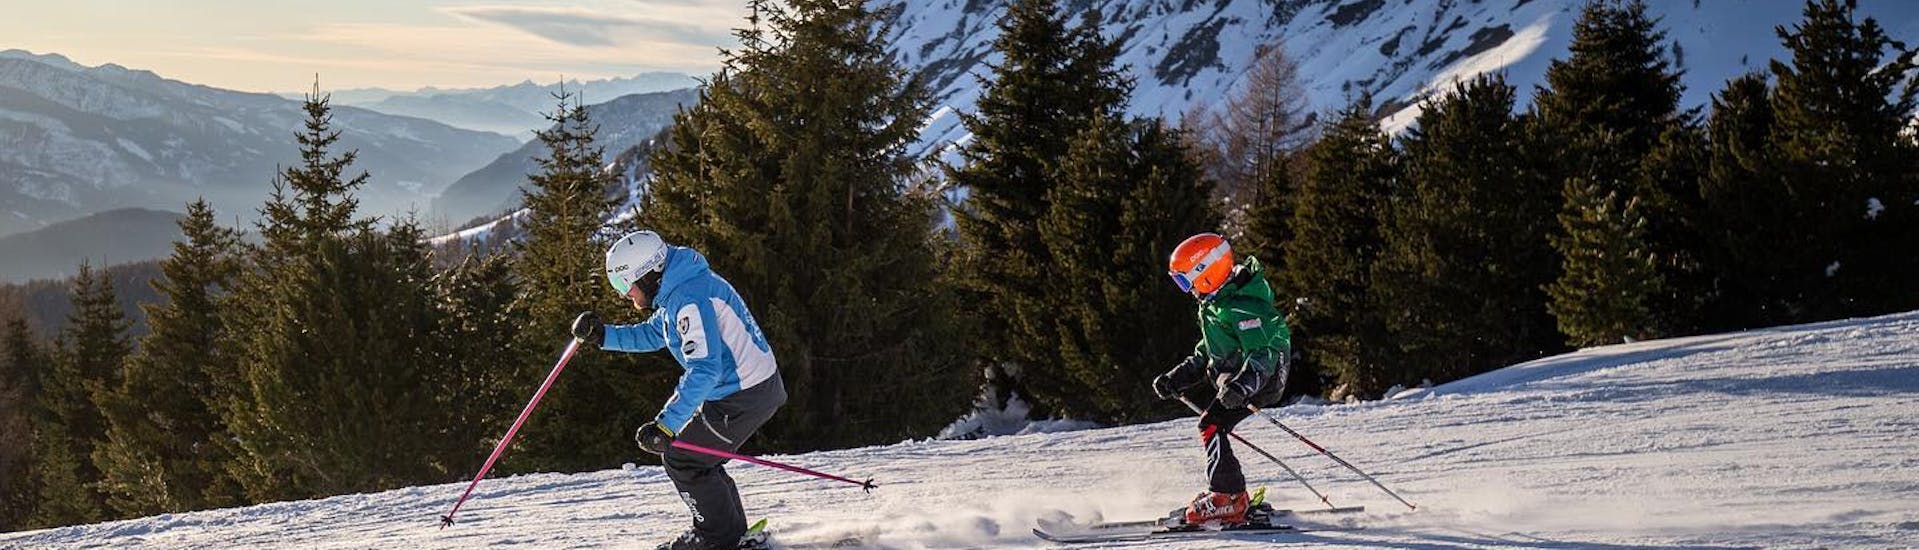 Kind en skileraar tijdens een van de privé skilessen voor kinderen van alle niveaus.